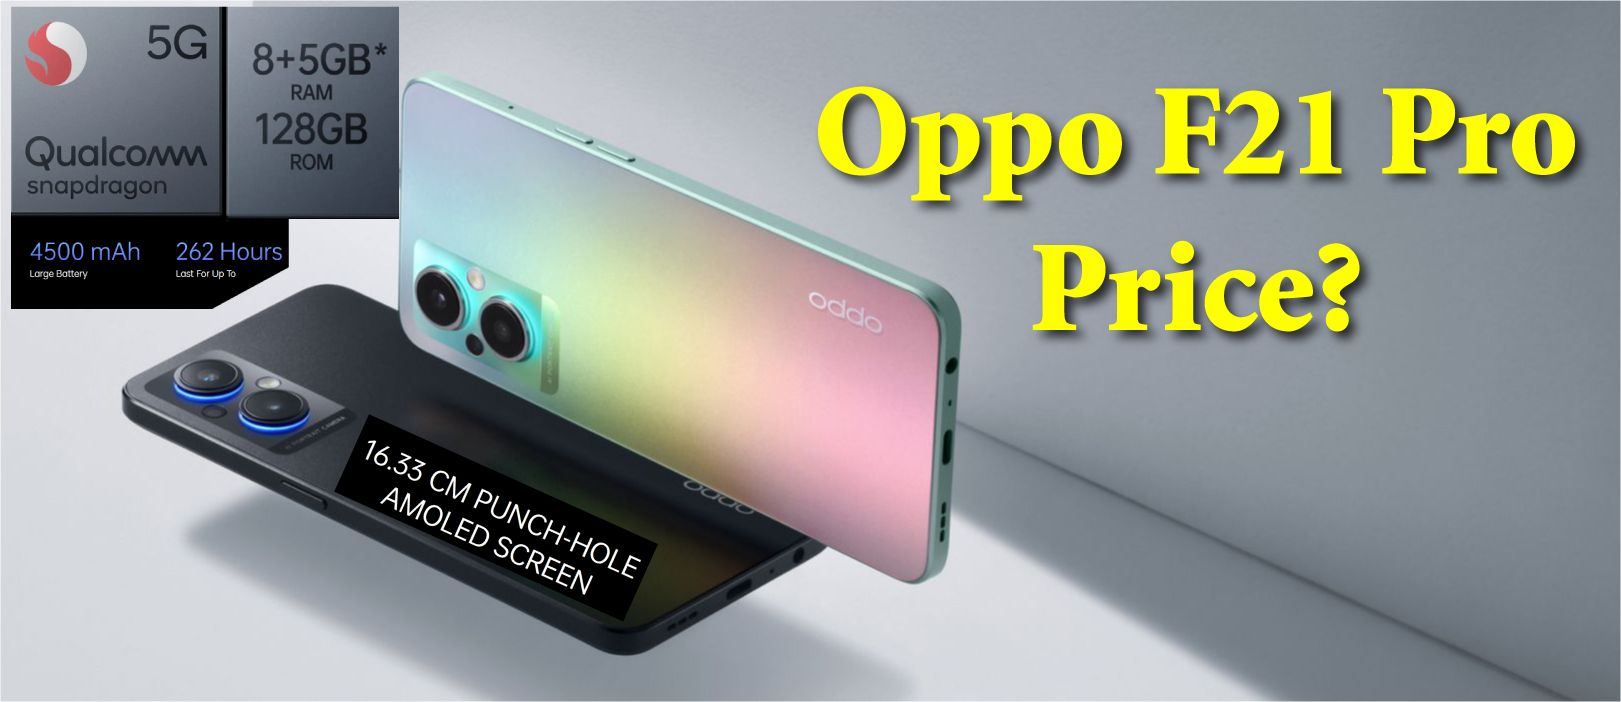 OPPO F21 Pro price